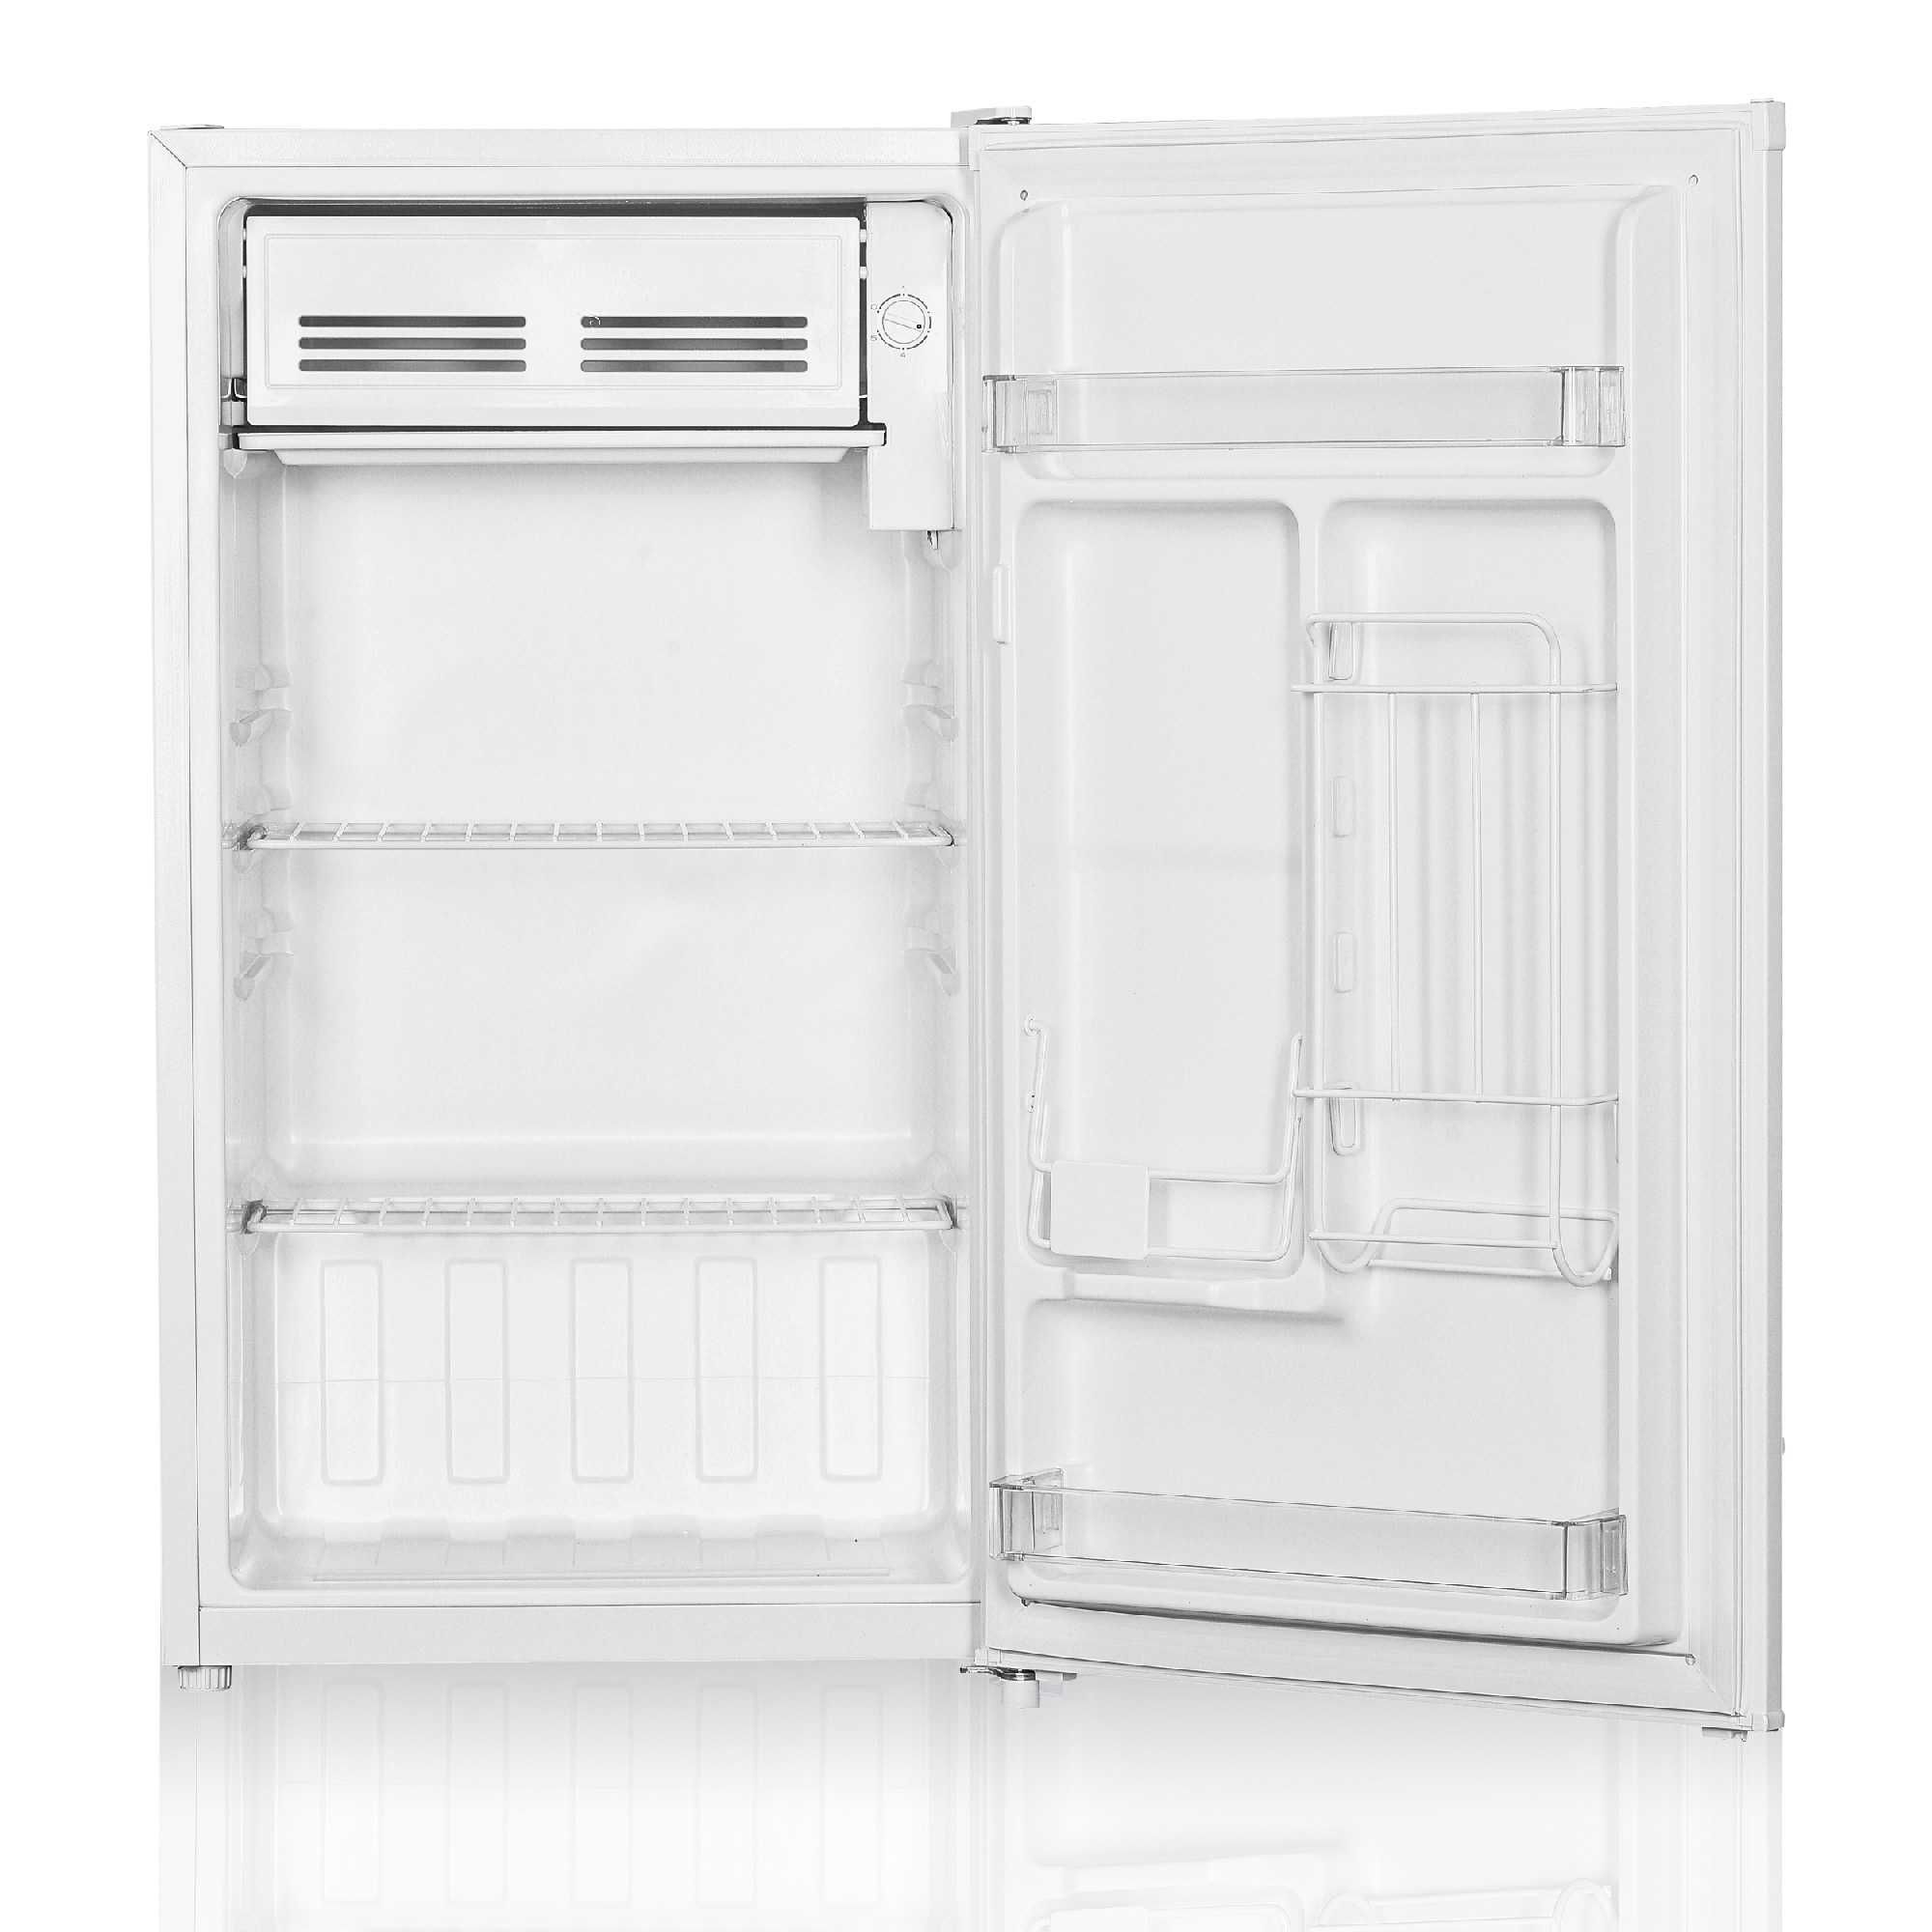 Холодильник Beston BD-200WT Nasiya savdo bor 0%